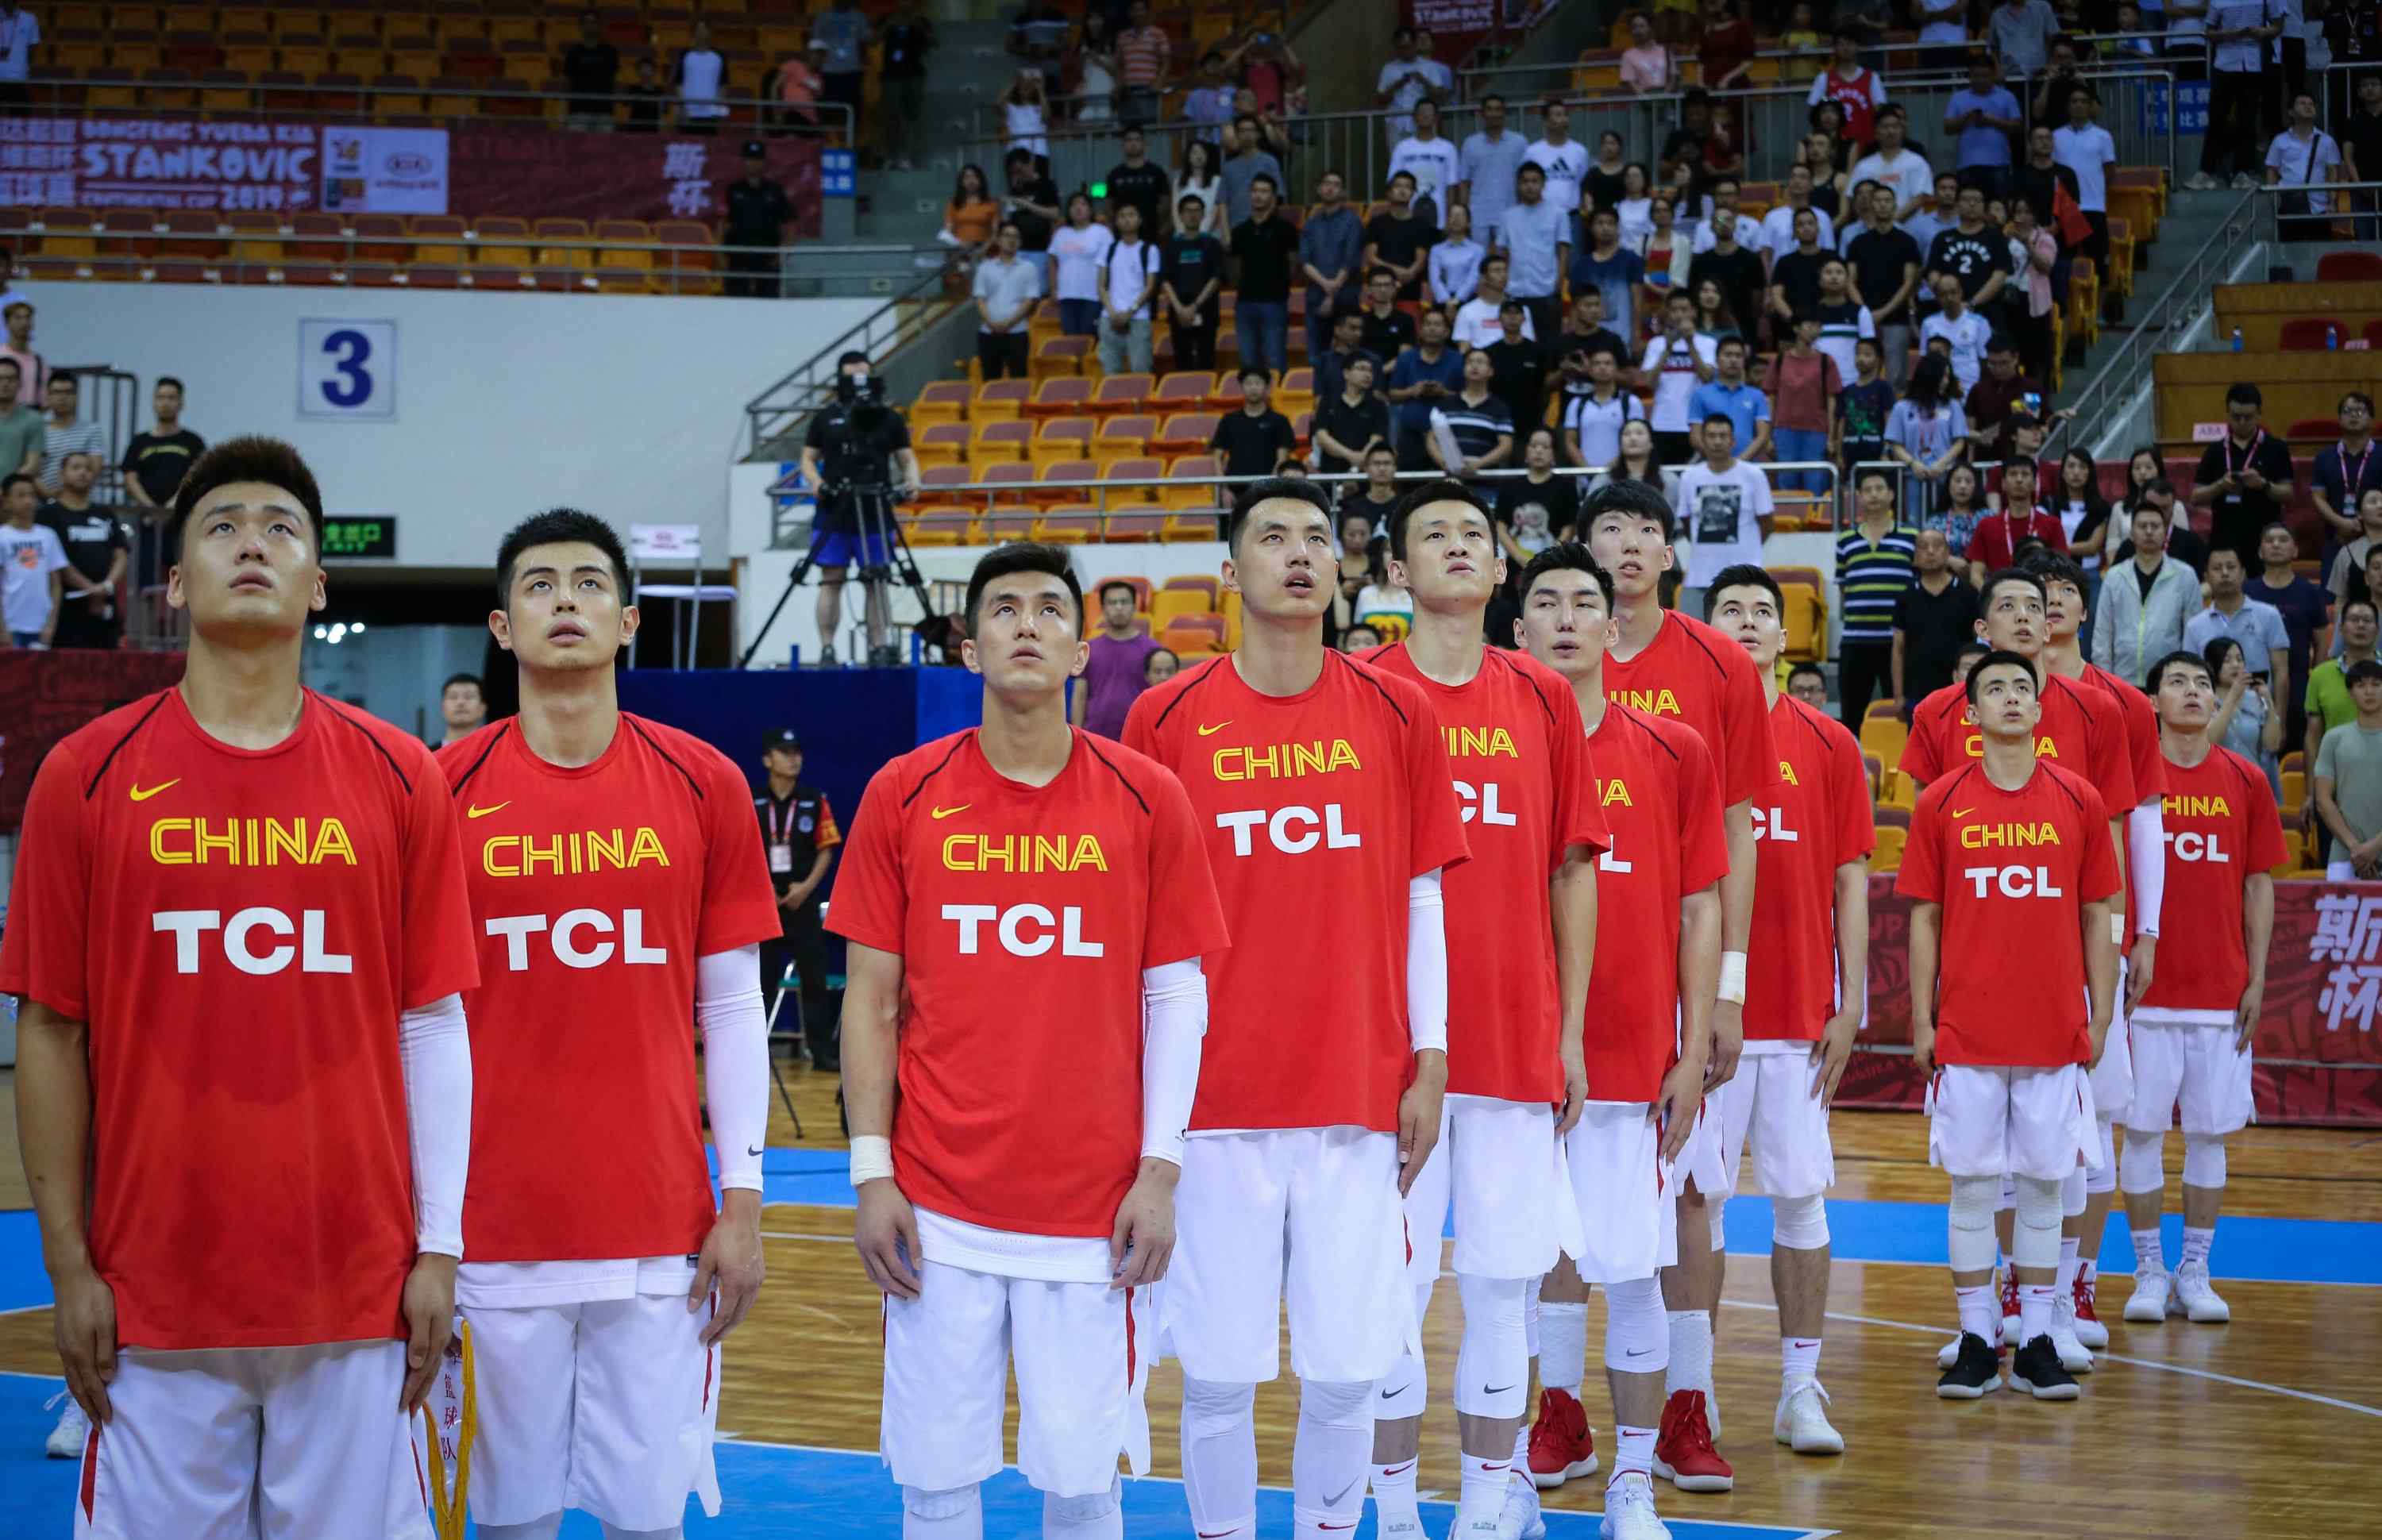 斯坦科维奇杯篮球赛 2019斯坦科维奇杯洲际男子篮球赛 中国队精彩回顾